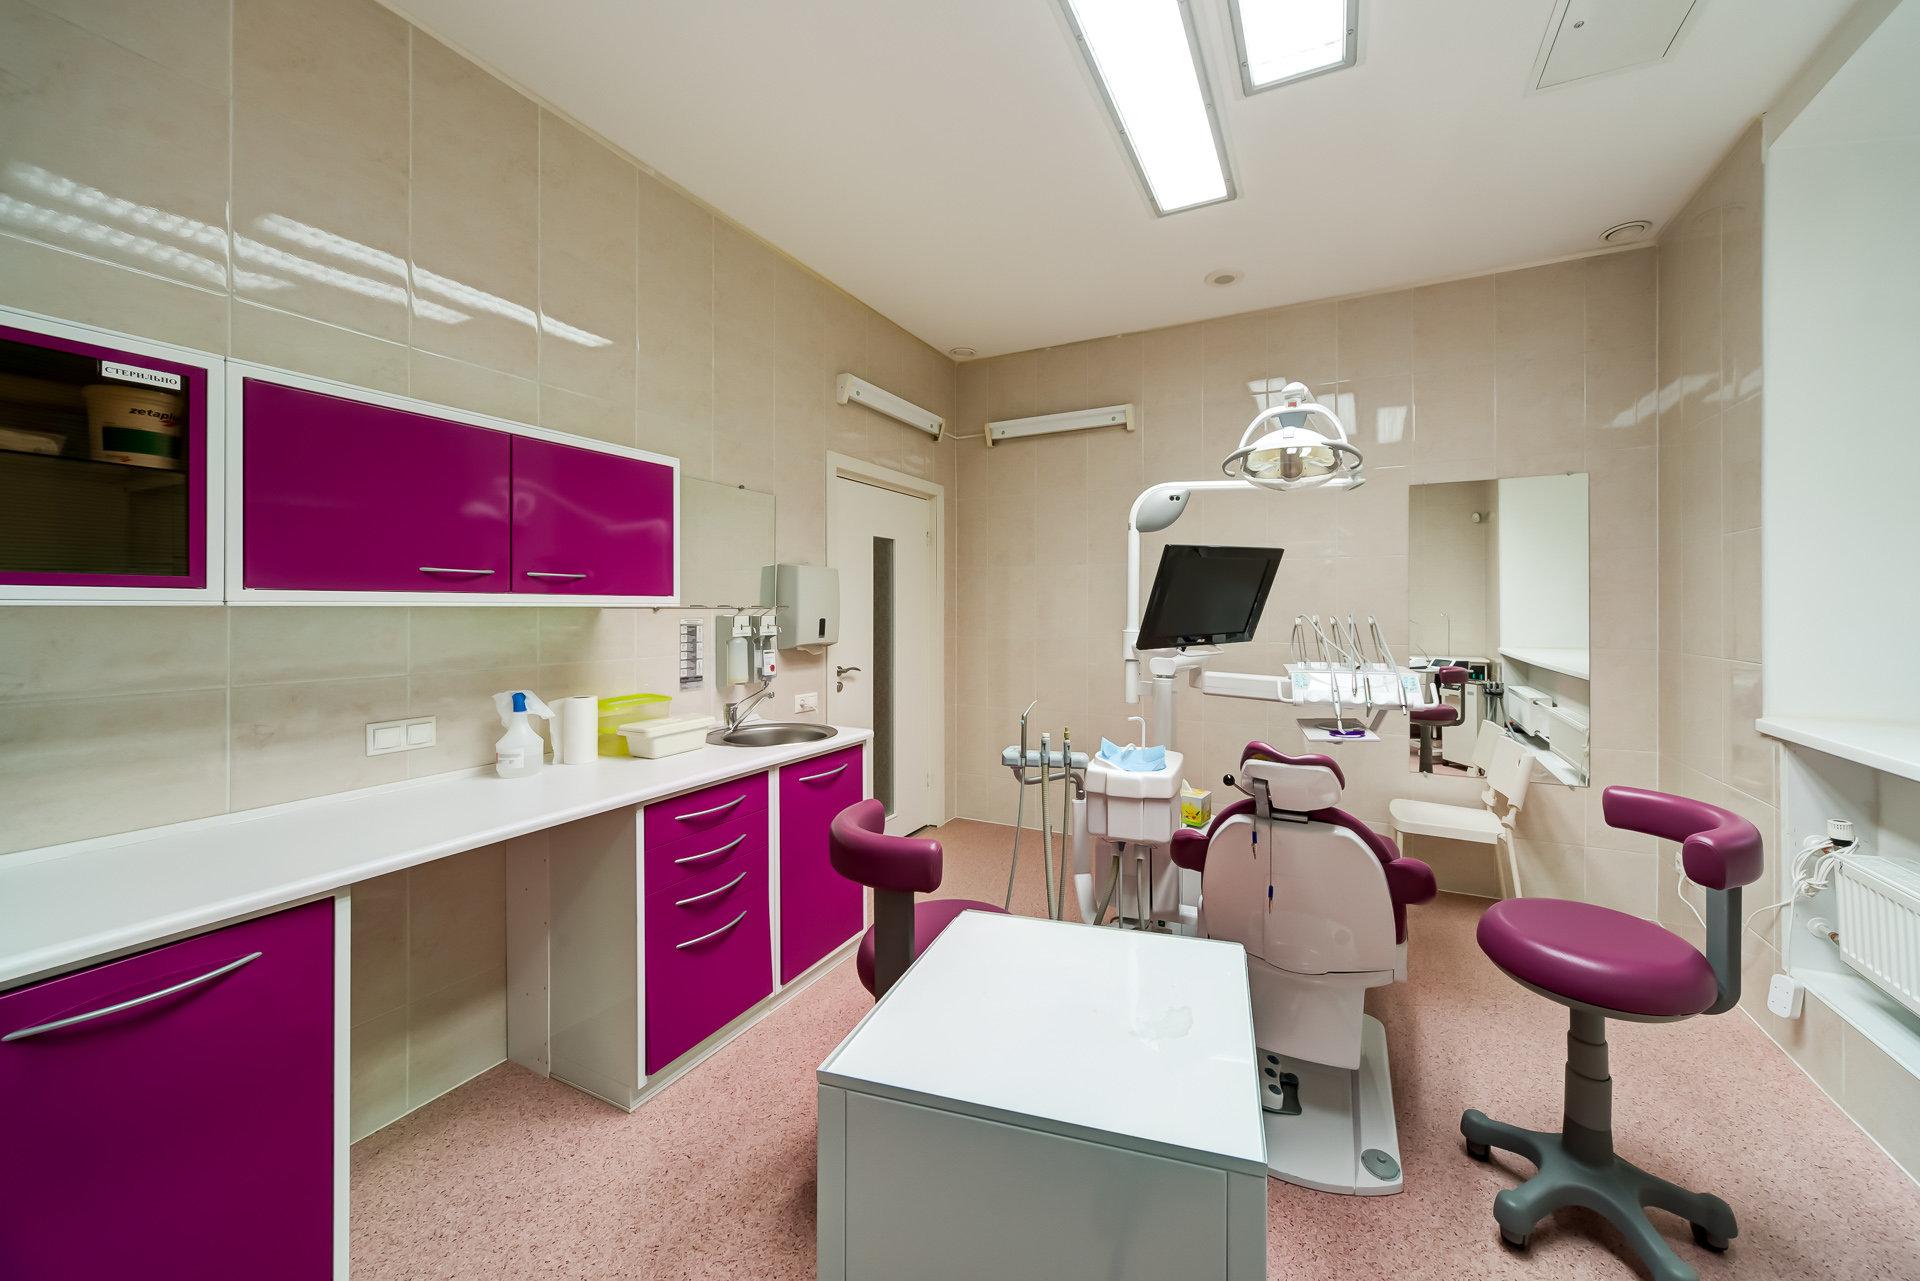 Стоматологическая клиника город улыбок